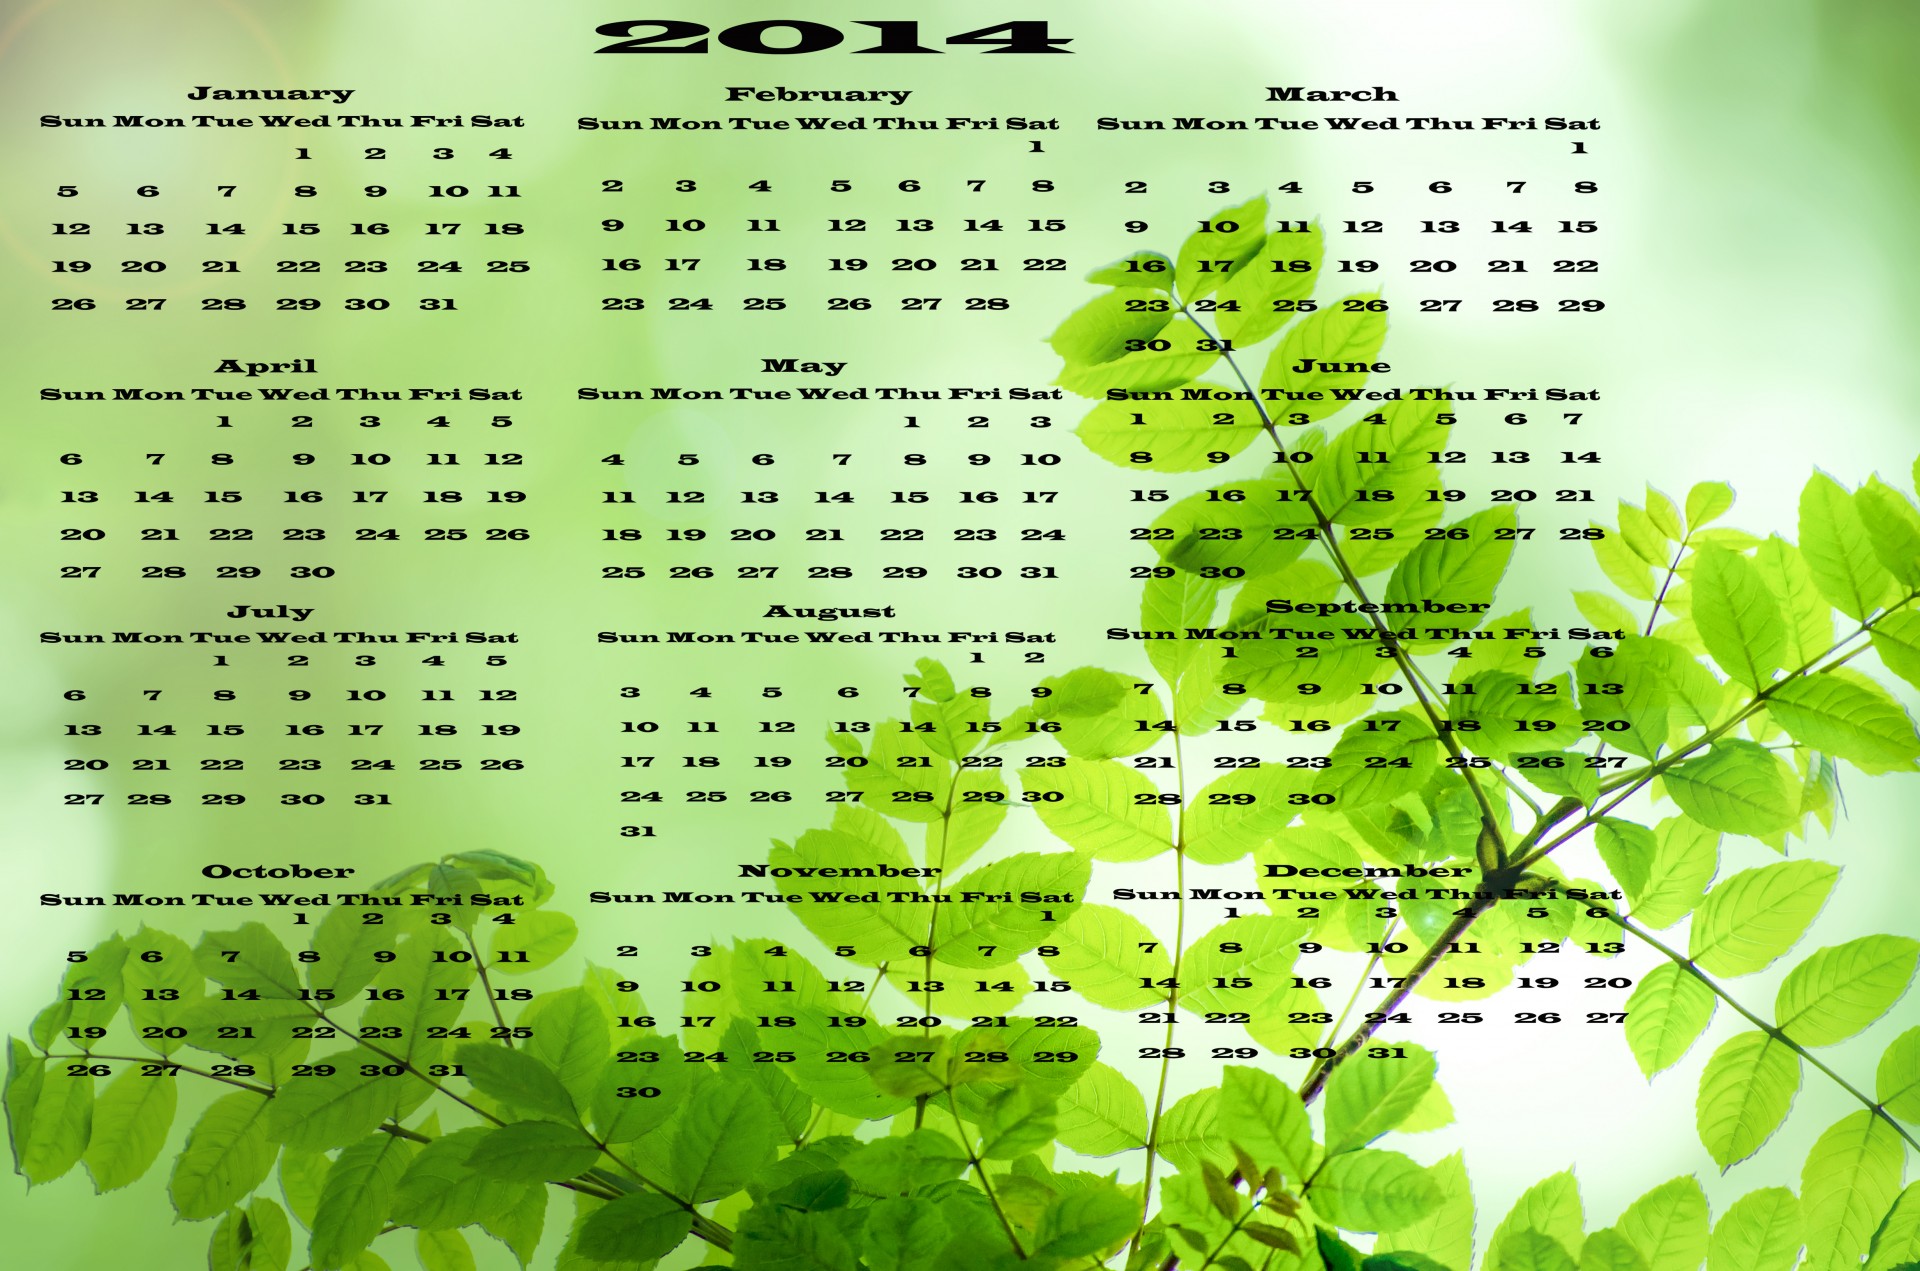 Календарь 2014